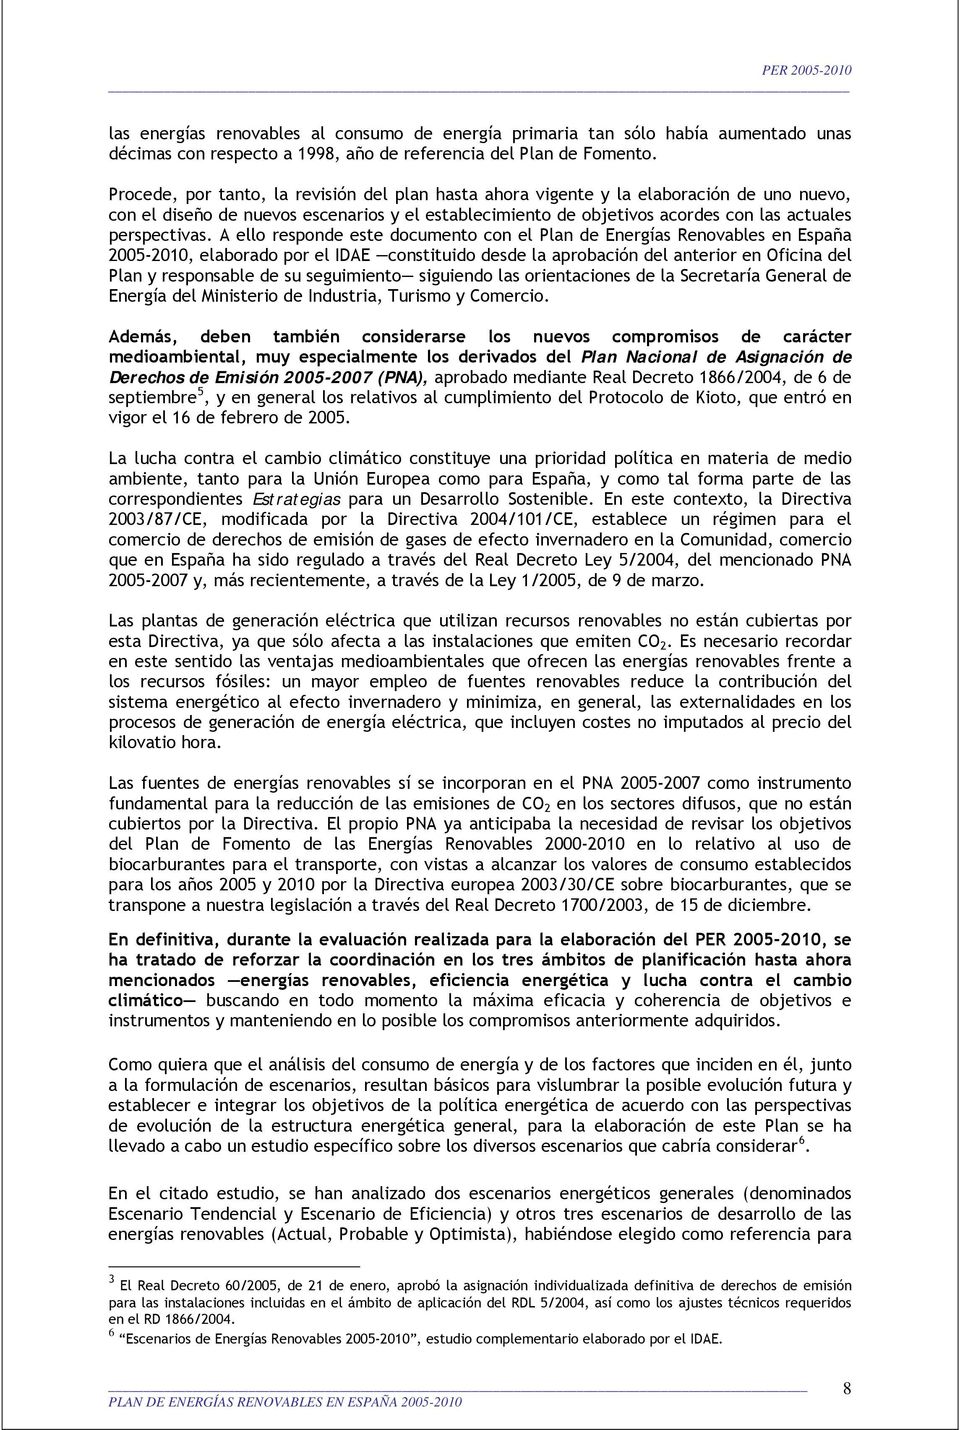 A ello responde este documento con el Plan de Energías Renovables en España 2005-2010, elaborado por el IDAE constituido desde la aprobación del anterior en Oficina del Plan y responsable de su